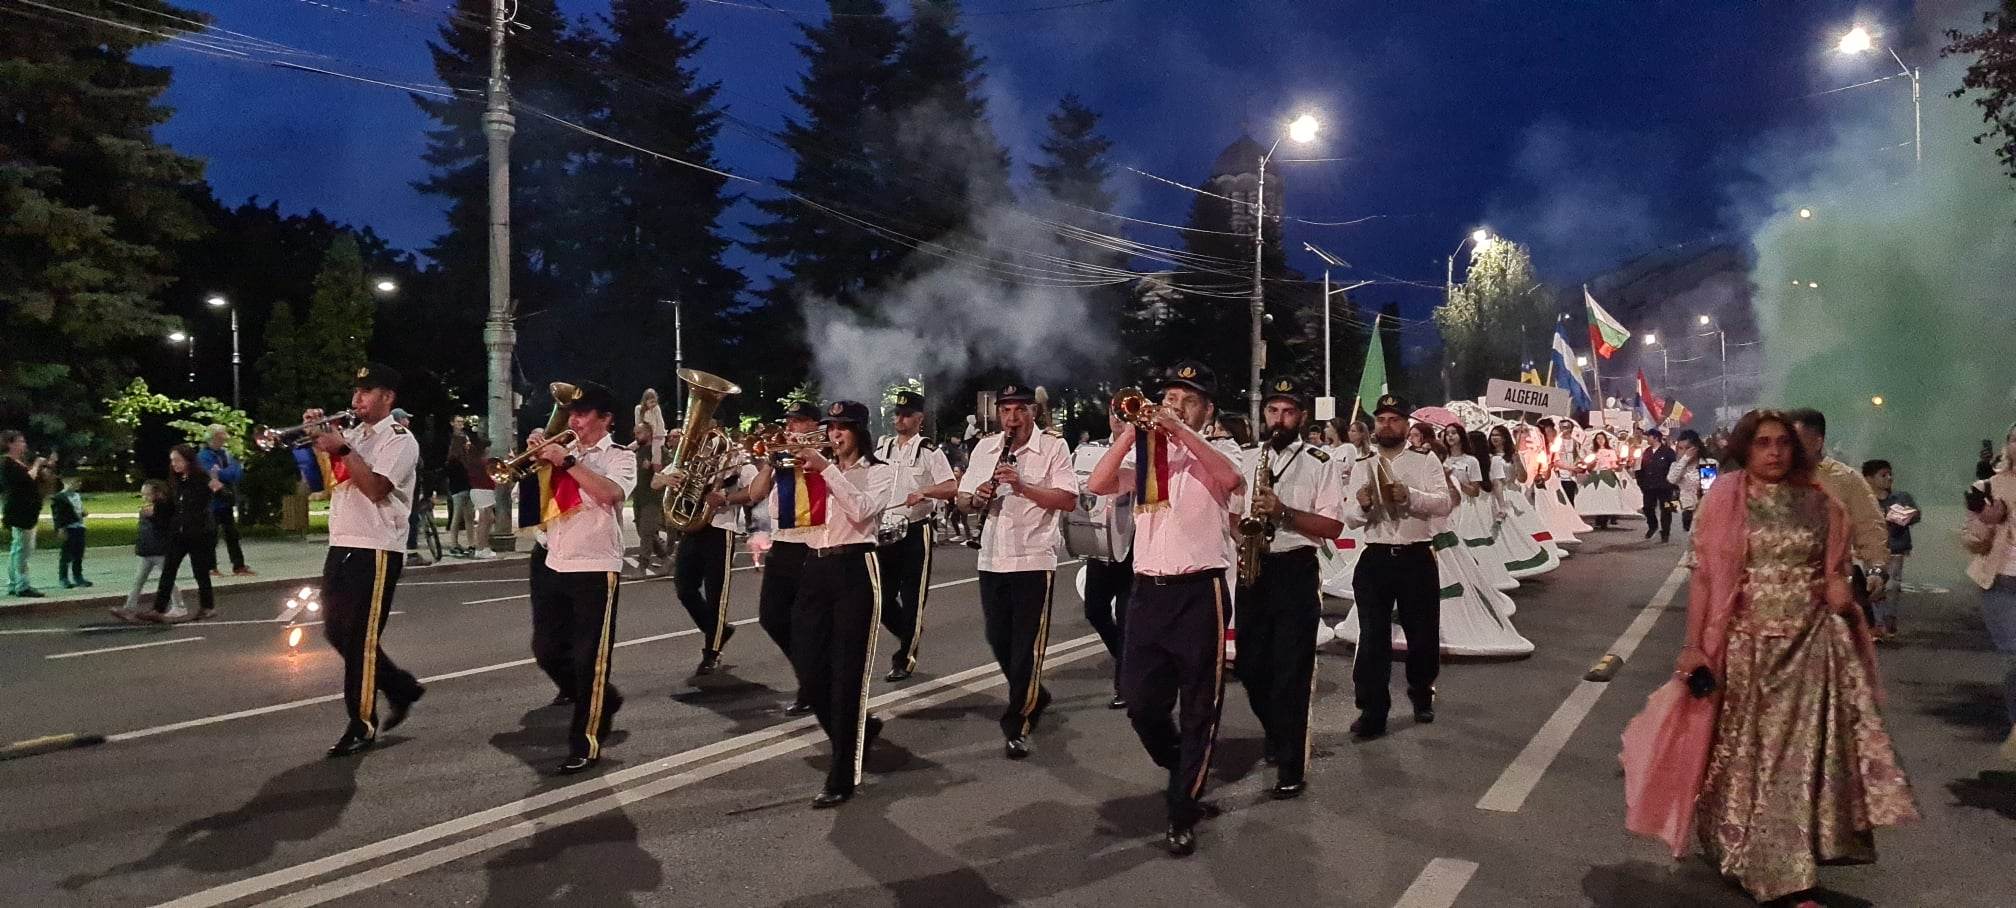 Parada BABEL a animat și în acest an străzile Târgoviștei. Parada a fost însuflețită de peste 200 de voluntari, sute de motocicliști, zeci de instrumentiști, zeci de balerine, actori și păpuși gigant. VIDEO